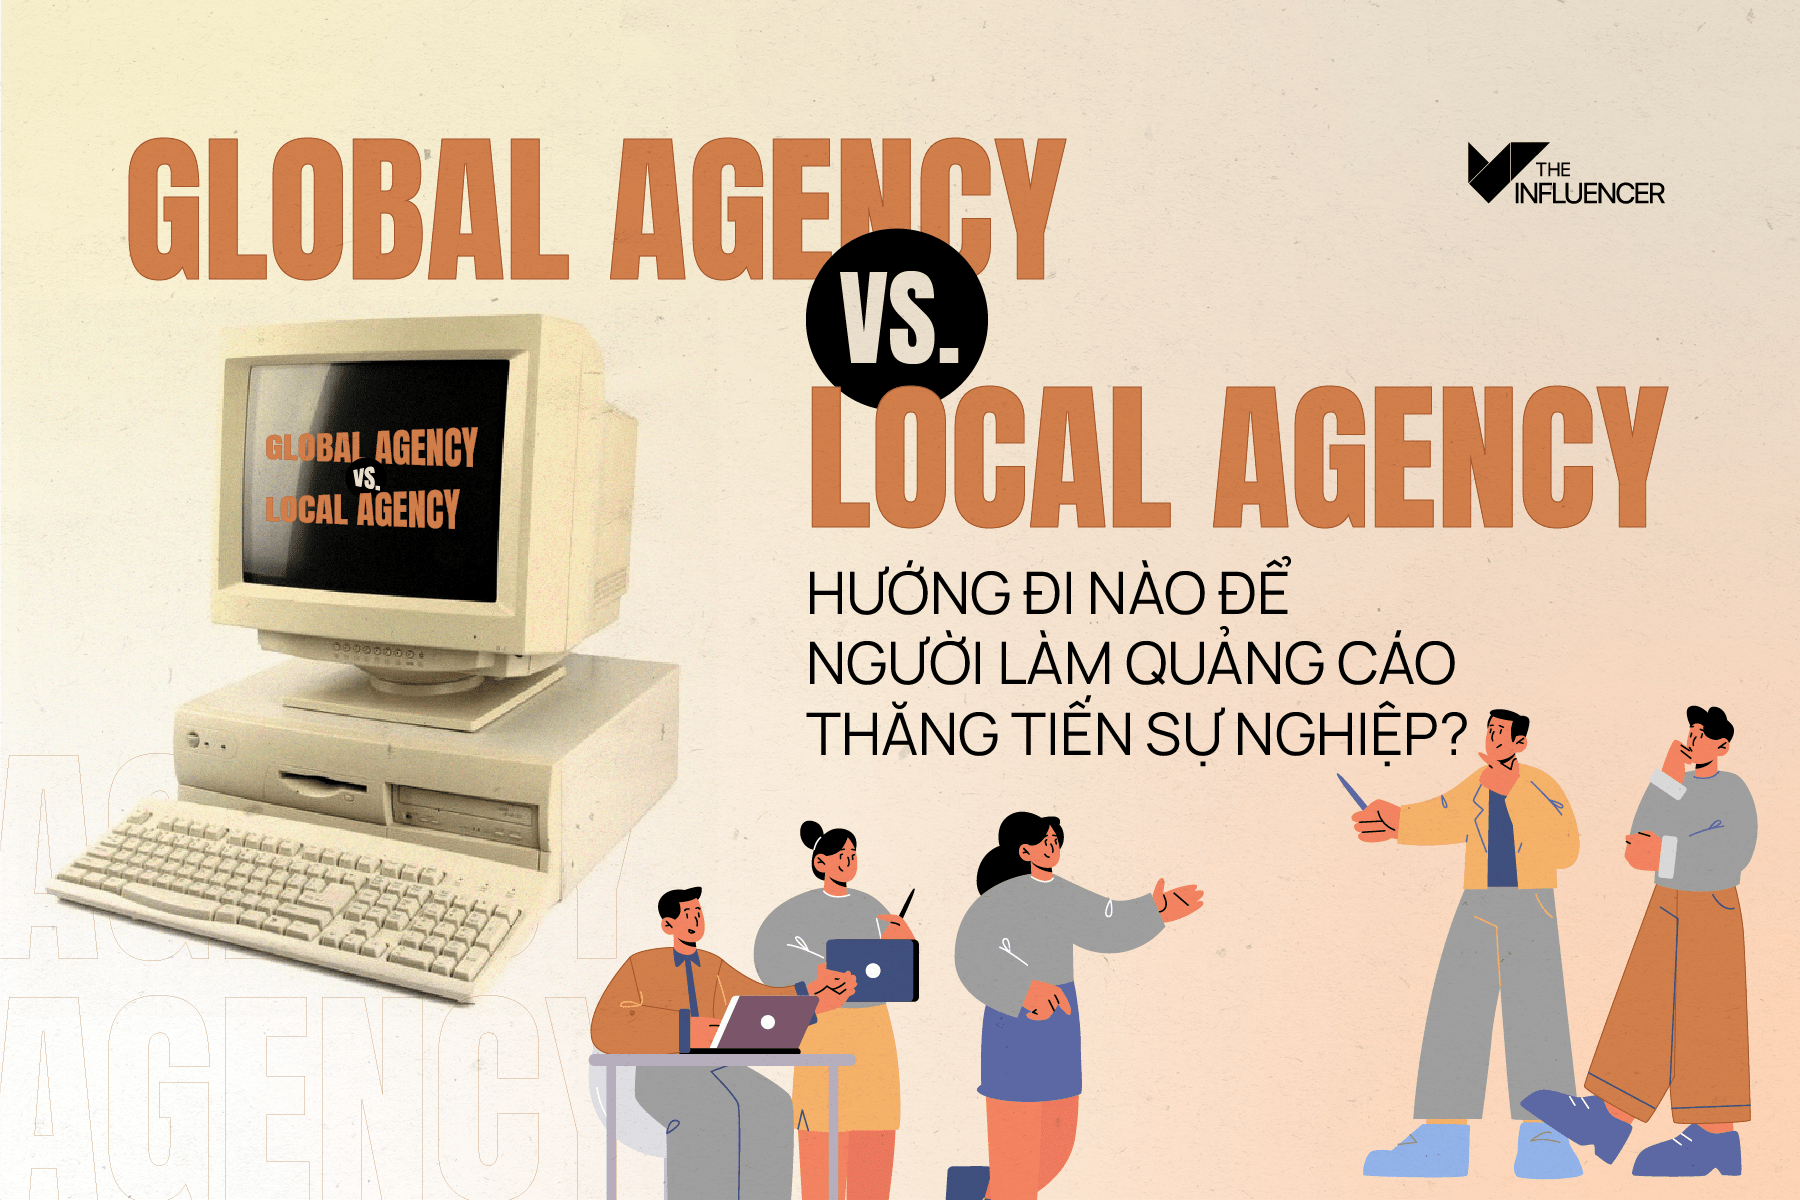 Global Agency vs. Local Agency - Hướng đi nào để người làm quảng cáo thăng tiến sự nghiệp?